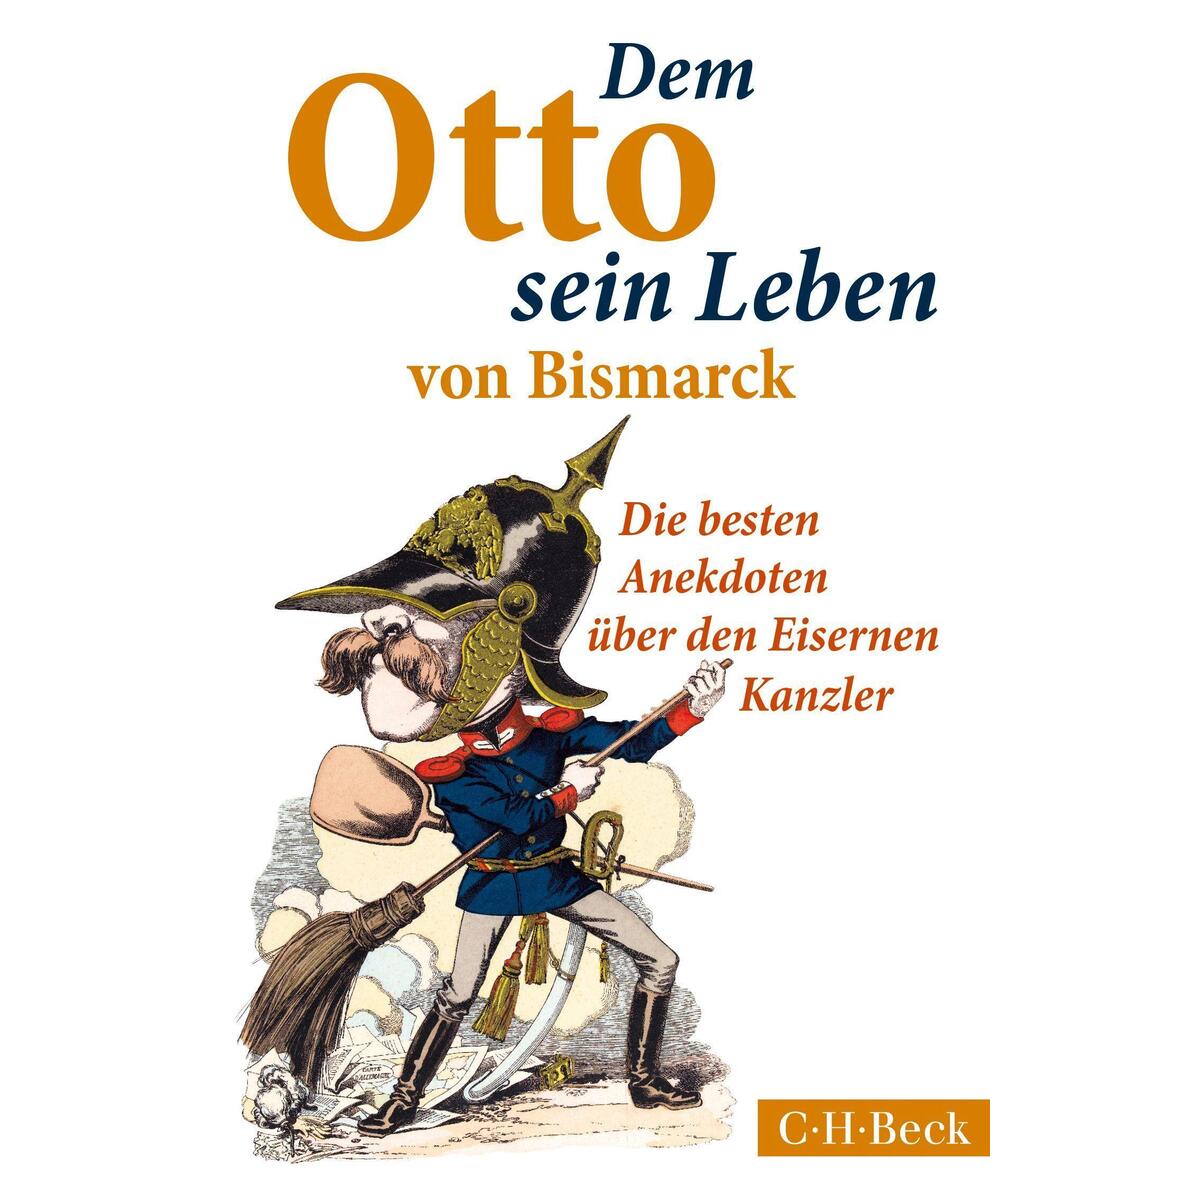 Dem Otto sein Leben von Bismarck von C. H. Beck